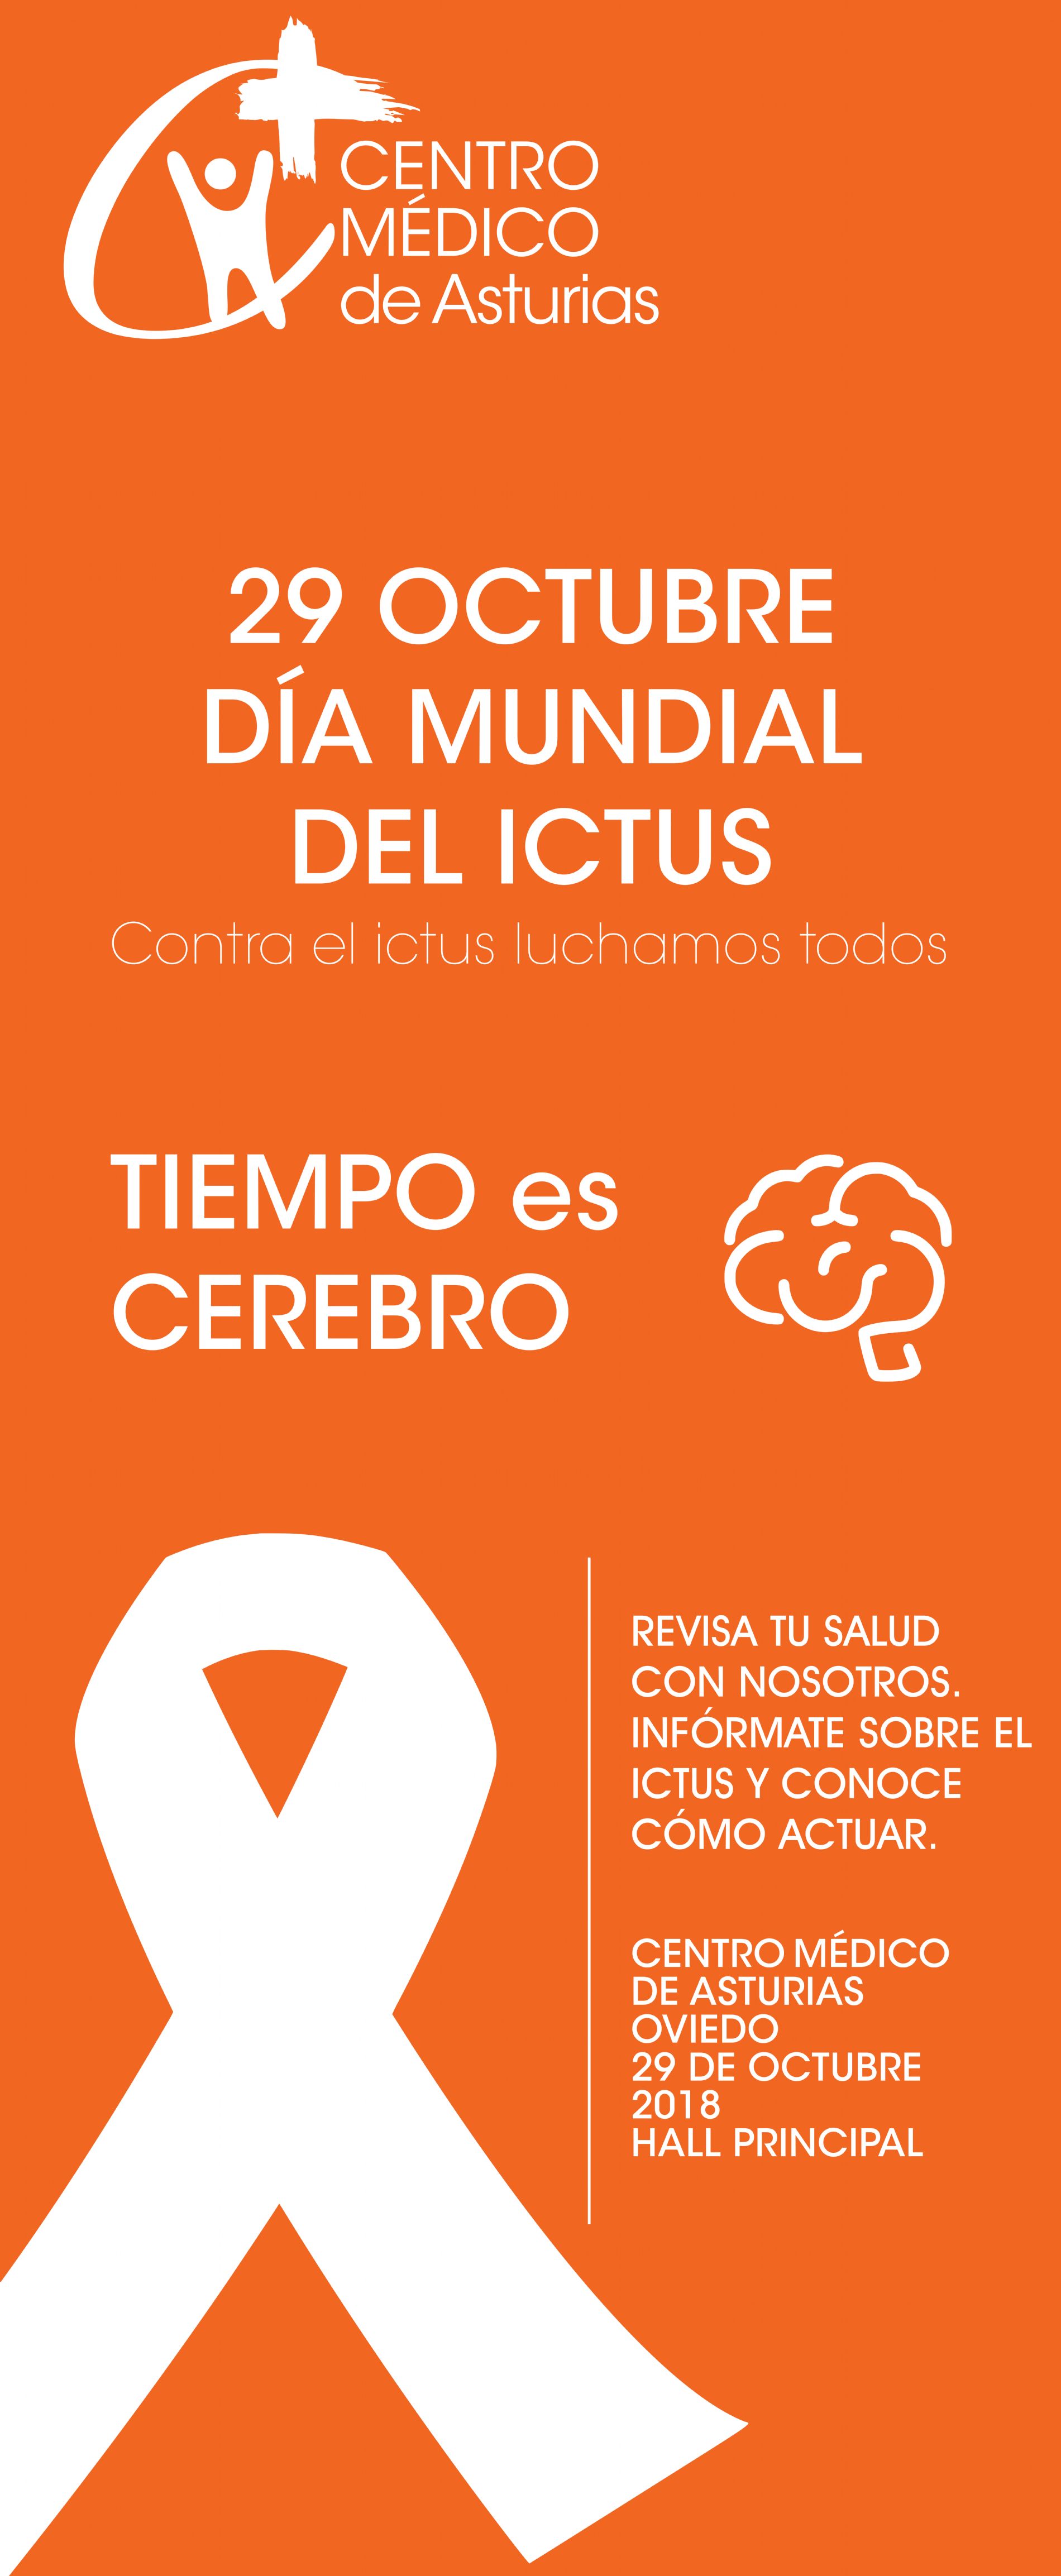 Jornada ICTUS en el Centro Mdico. Revisa tu salud con nosotros porque tiempo es cerebro.